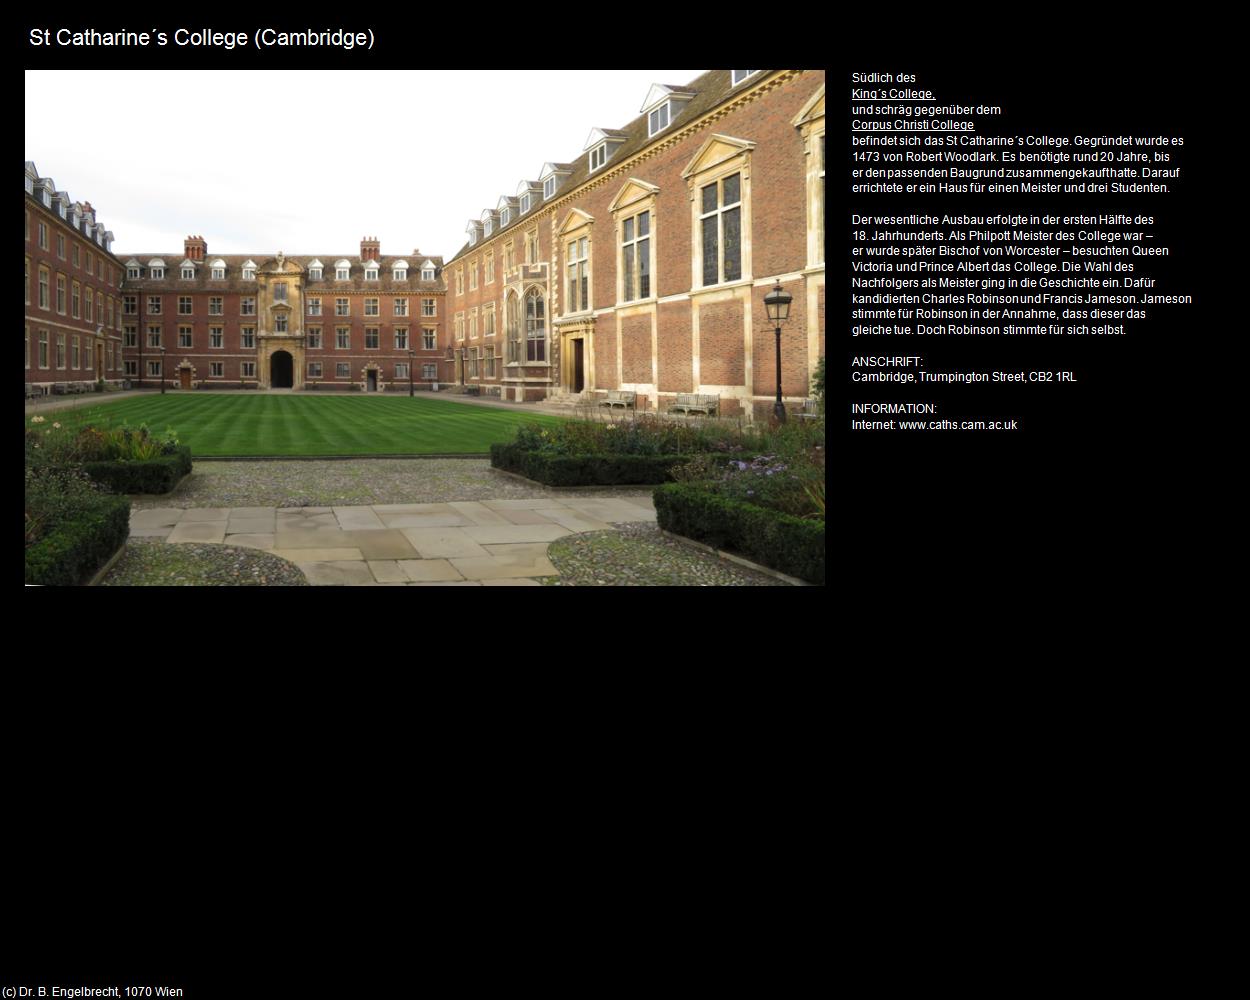 St Catharine‘s College (Cambridge, England) in Kulturatlas-ENGLAND und WALES(c)B.Engelbrecht